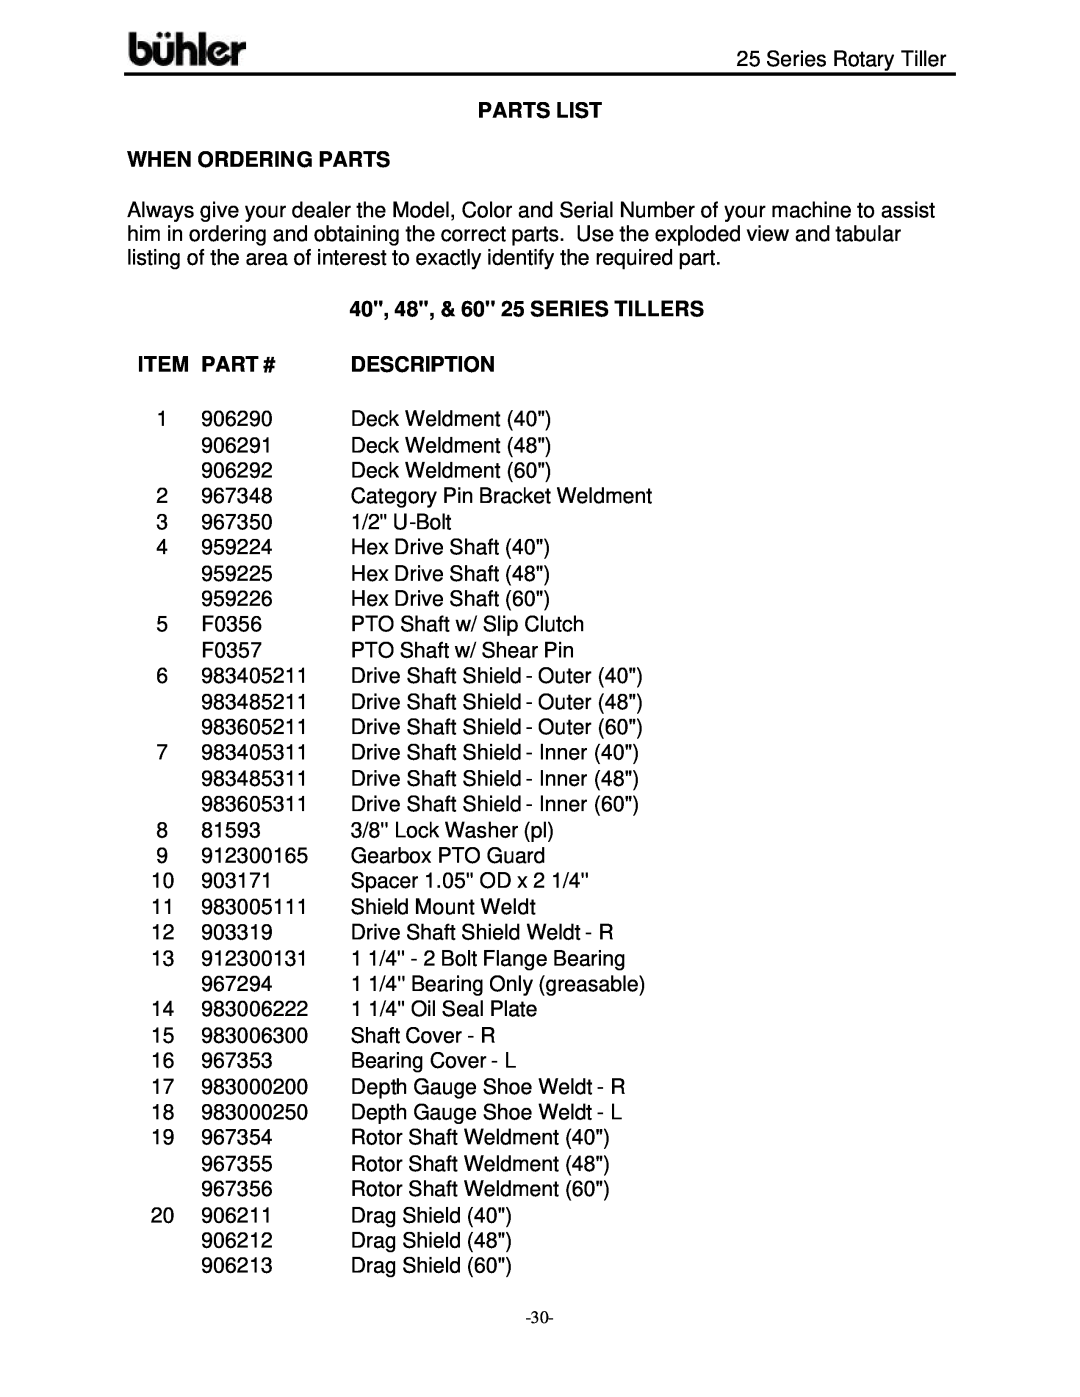 Buhler FK303 warranty Parts List When Ordering Parts, 40, 48, & 60 25 SERIES TILLERS, Item Part #, Description 